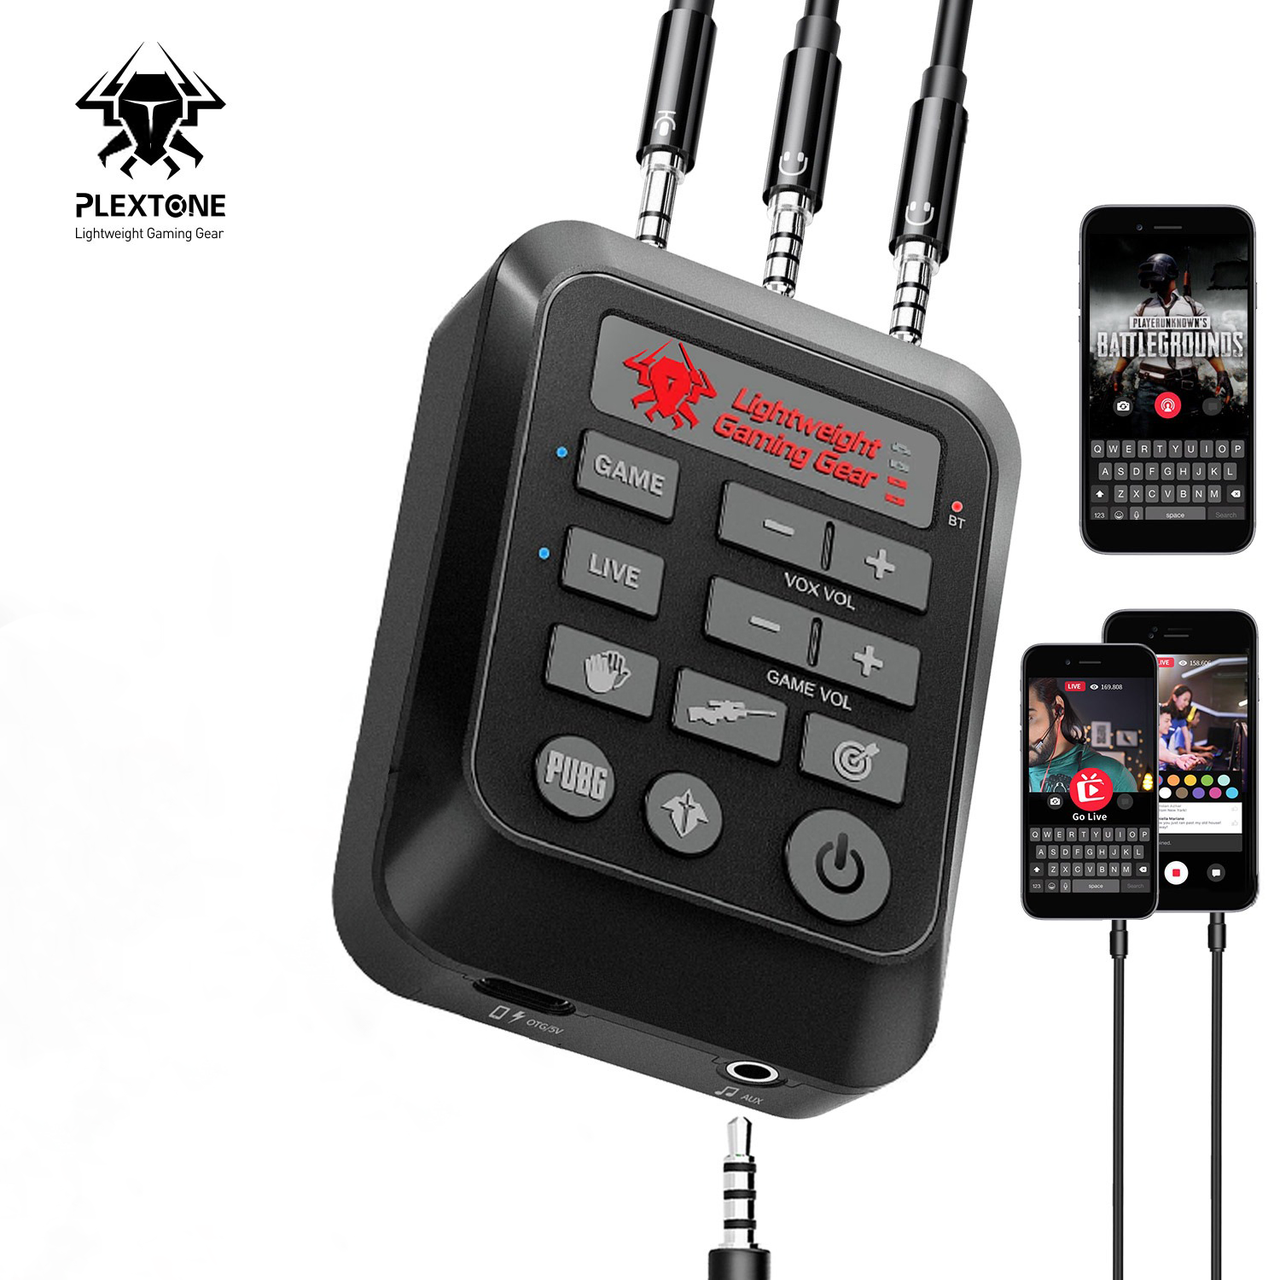 Зовнішня ігрова звукова карта Live звуковий ефект 7.1 для мобільних телефонів планшетів Plextone GS6